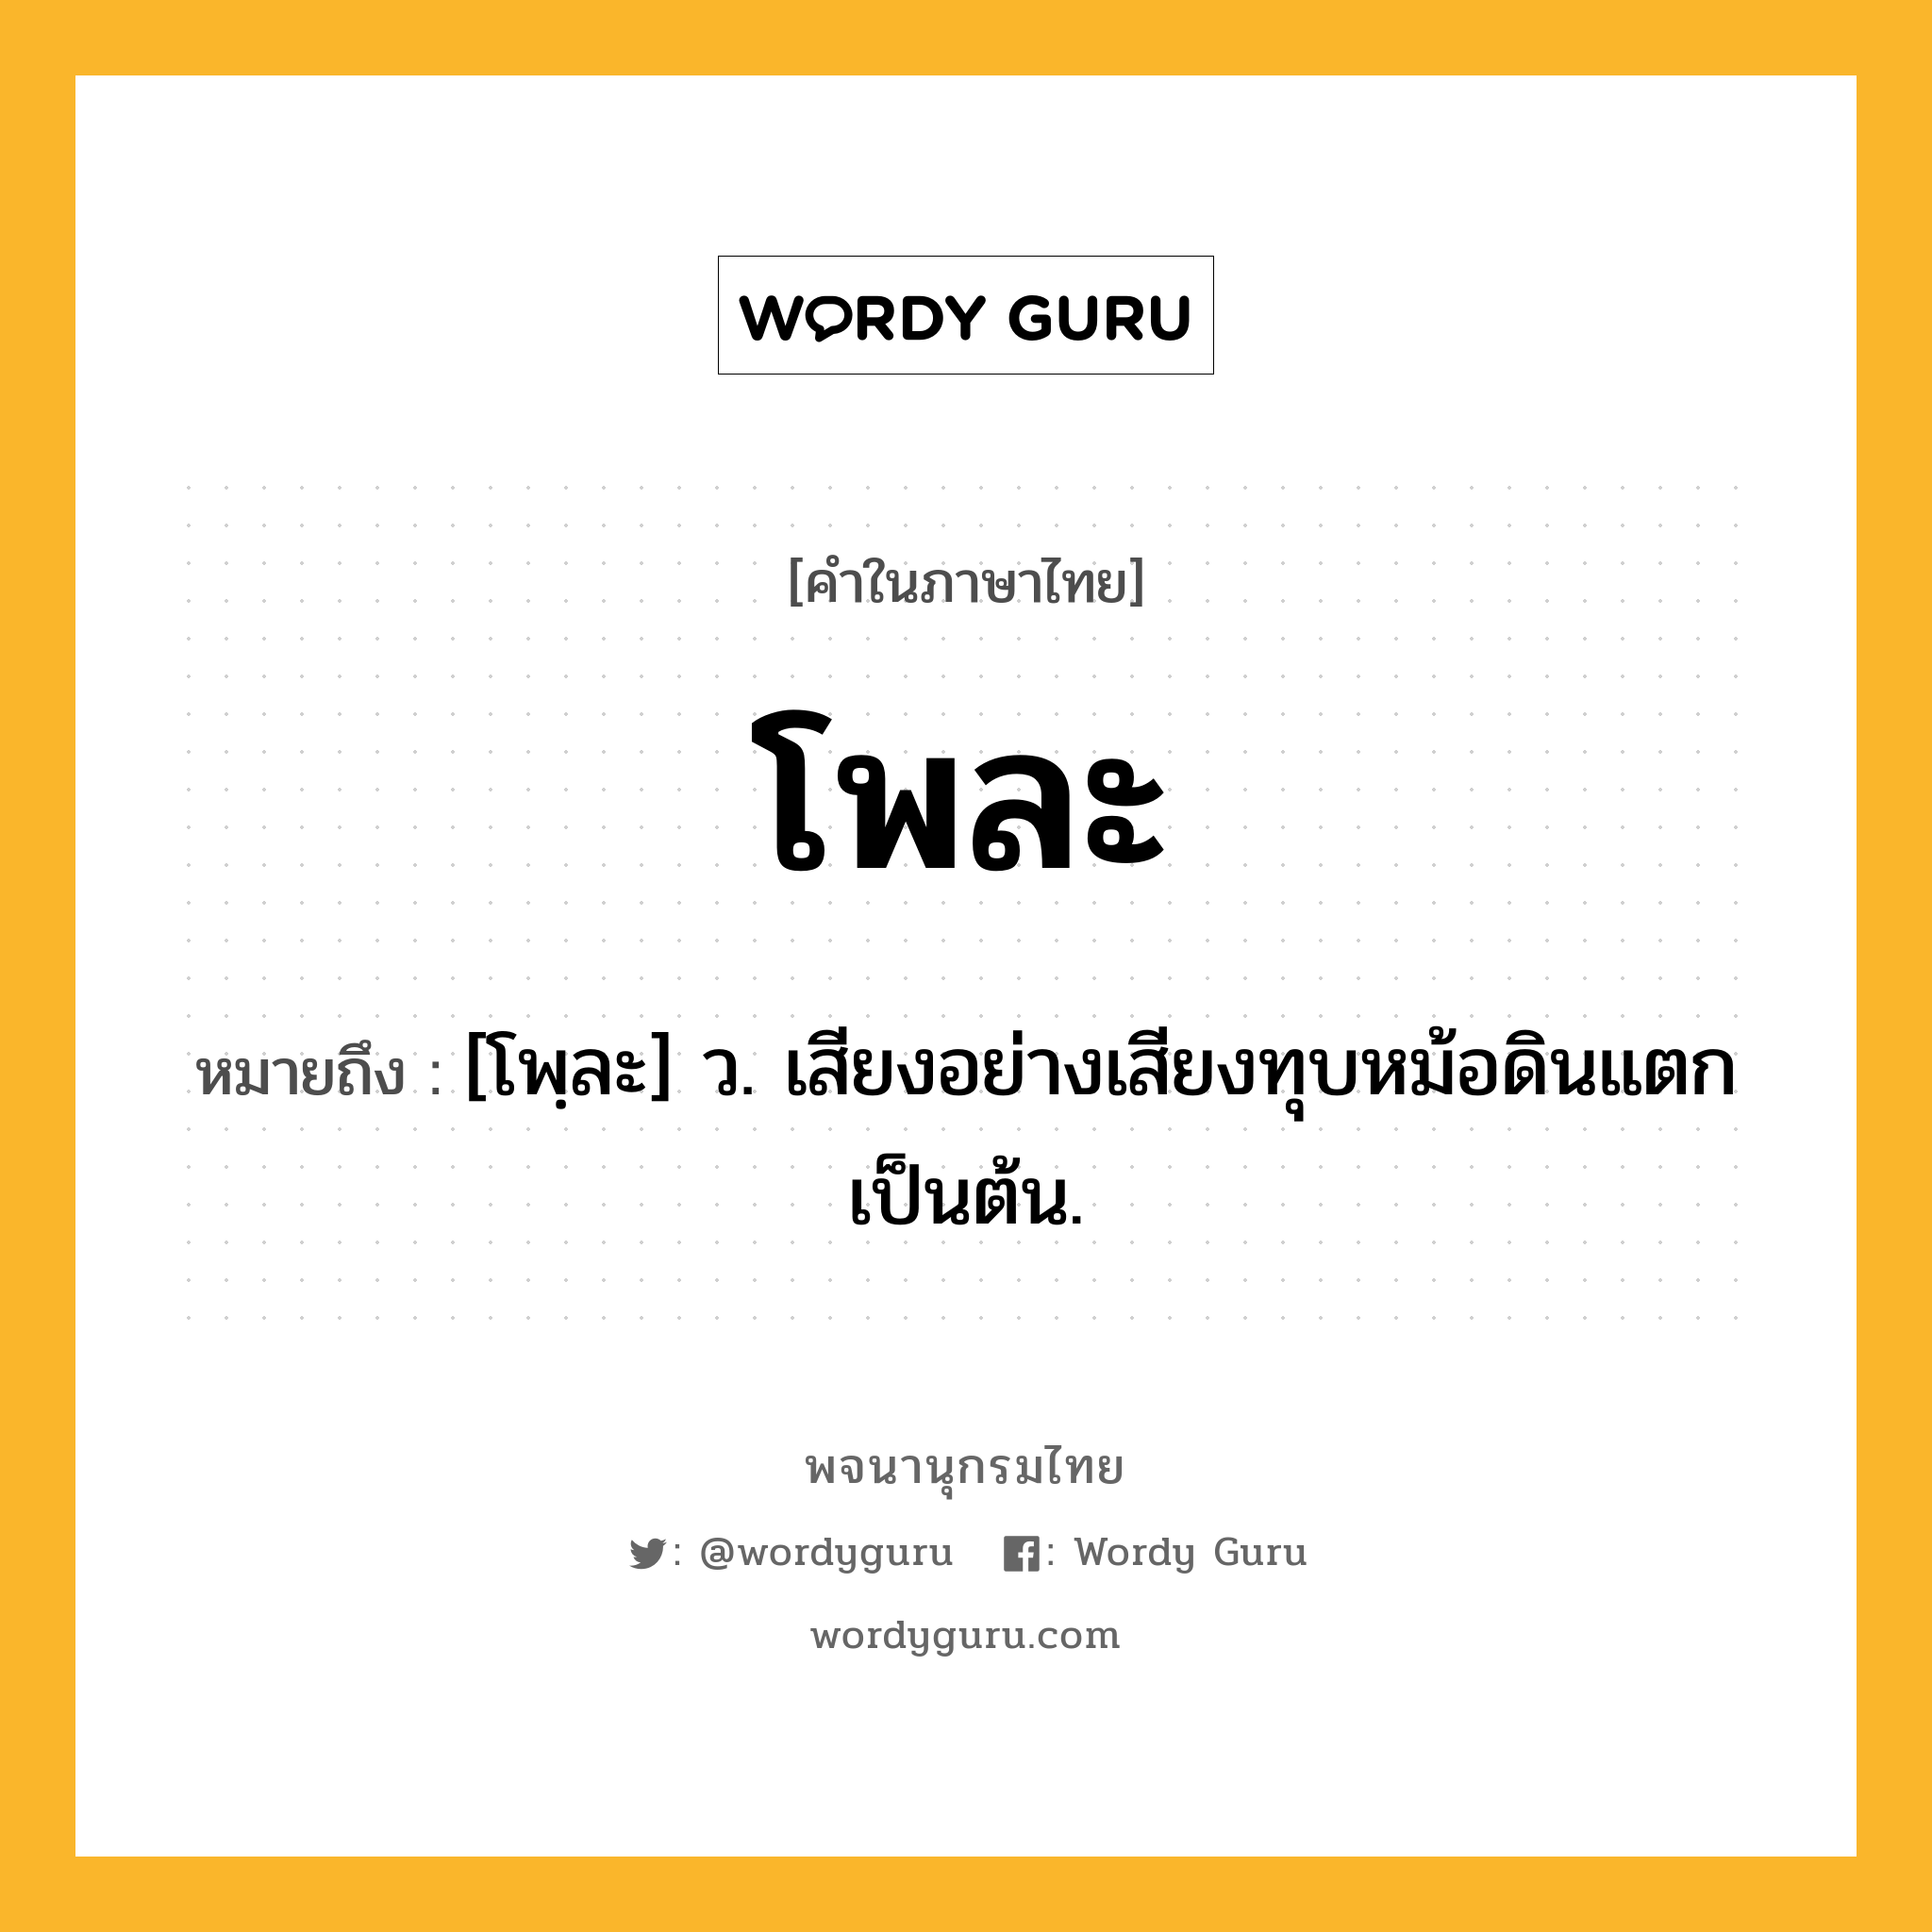 โพละ หมายถึงอะไร?, คำในภาษาไทย โพละ หมายถึง [โพฺละ] ว. เสียงอย่างเสียงทุบหม้อดินแตกเป็นต้น.